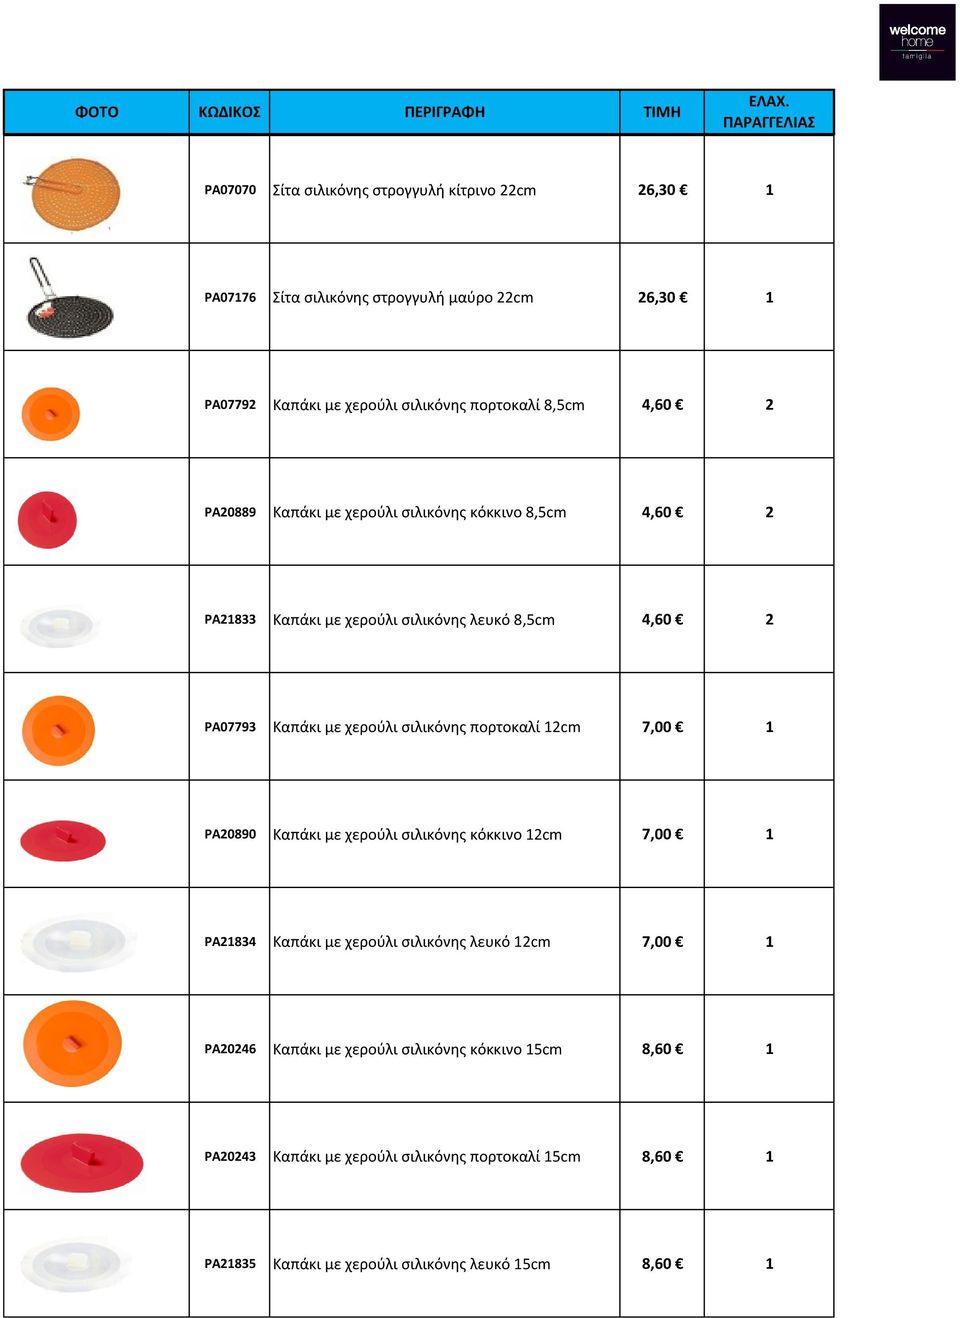 σιλικόνης πορτοκαλί 12cm 7,00 1 PA20890 Καπάκι με χερούλι σιλικόνης κόκκινο 12cm 7,00 1 PA21834 Καπάκι με χερούλι σιλικόνης λευκό 12cm 7,00 1 PA20246